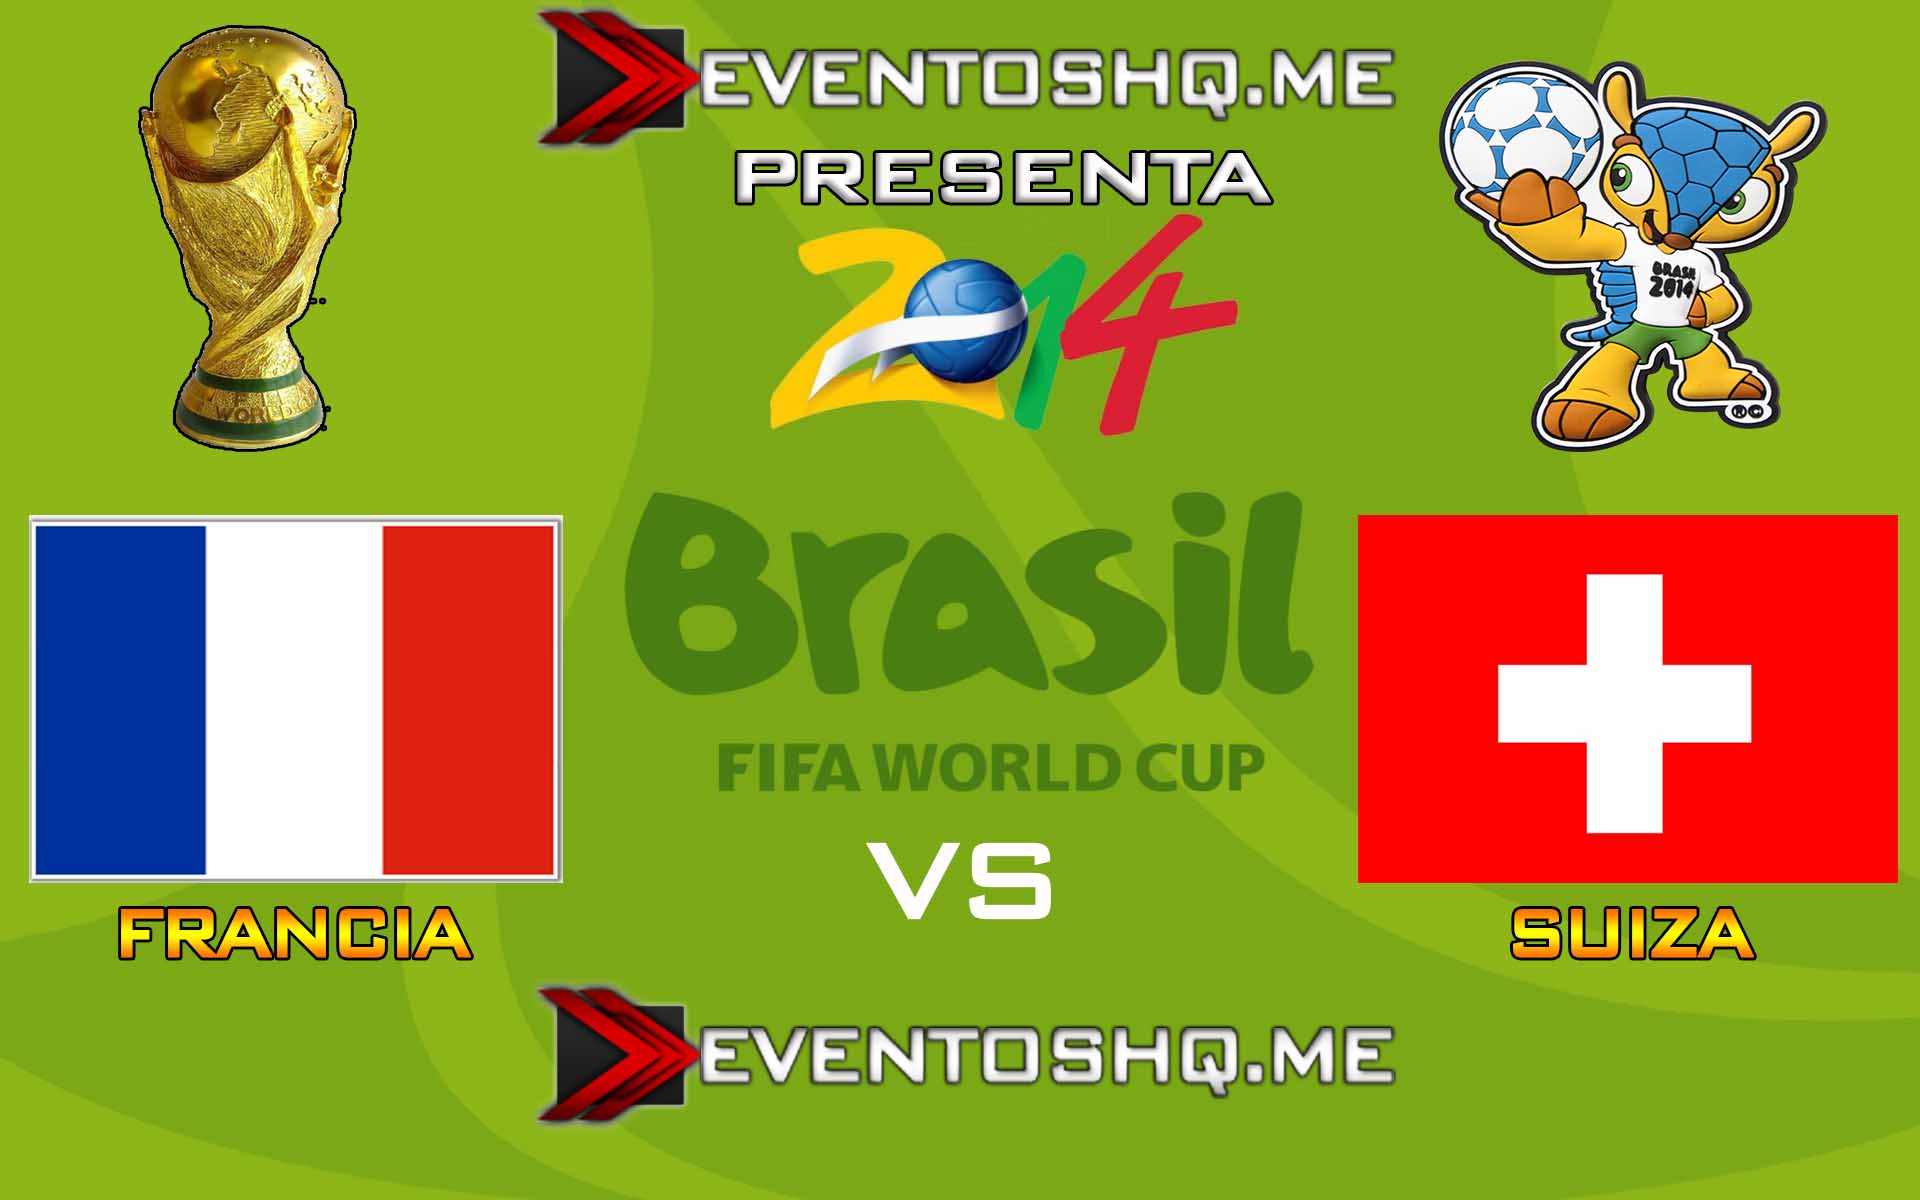 Ver en Vivo Francia vs Suiza Mundial Brasil 2014 www.eventoshq.me